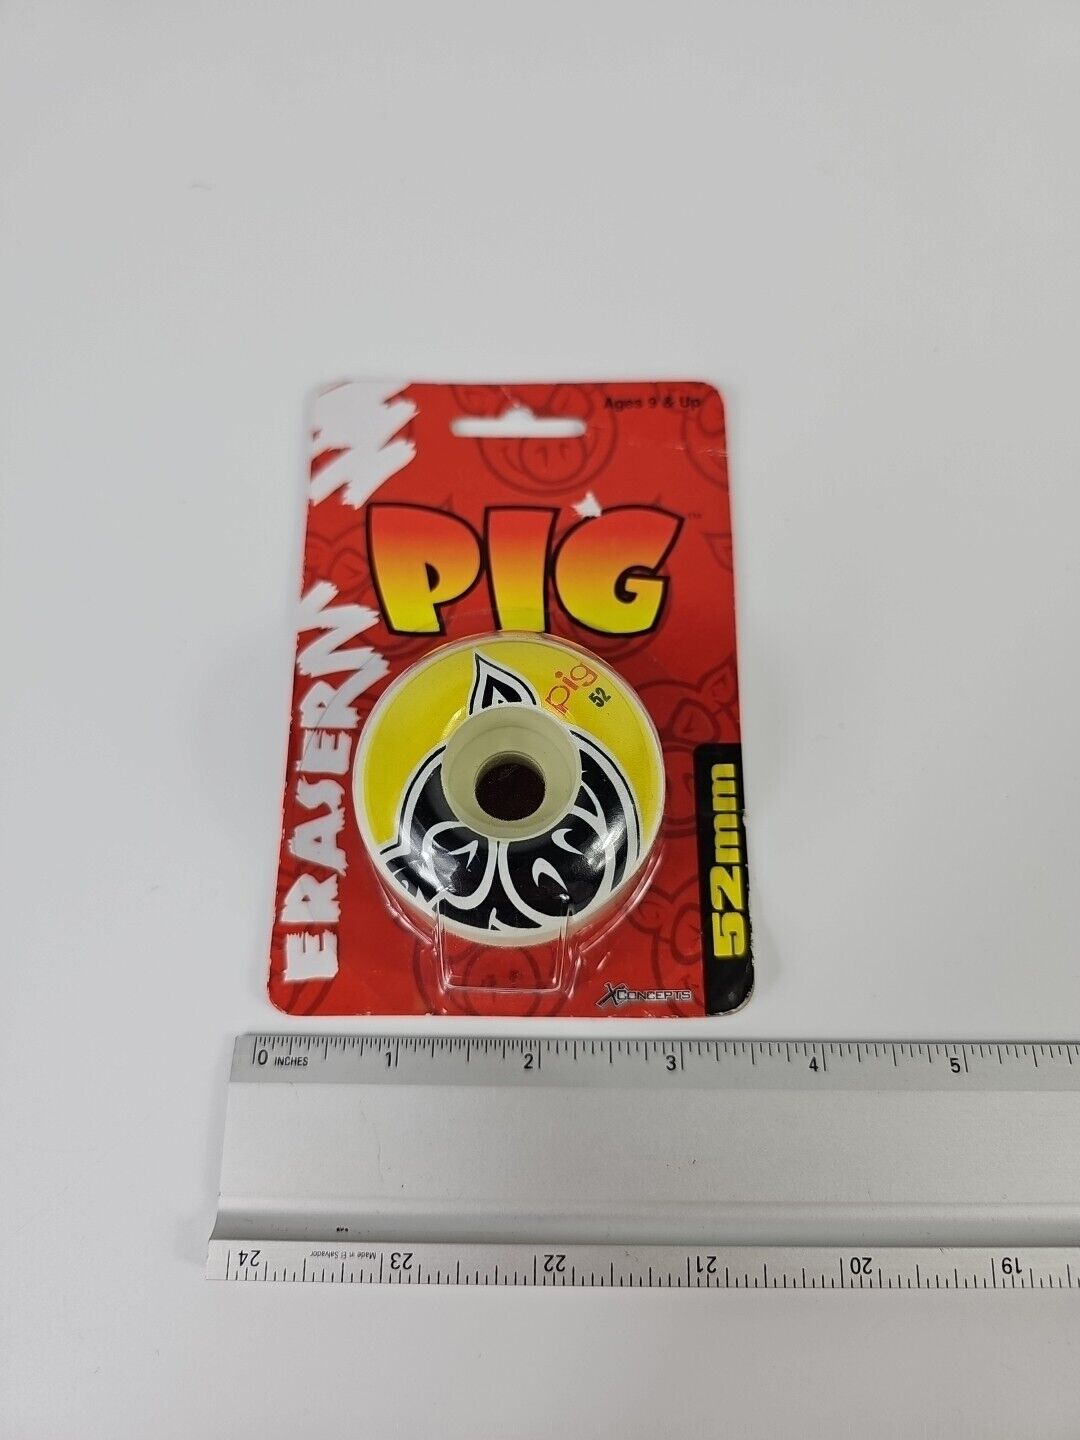 Pig Skateboard Eraser 52mm Wheel XConcepts 2000 Vintage Y2K New Sealed #1